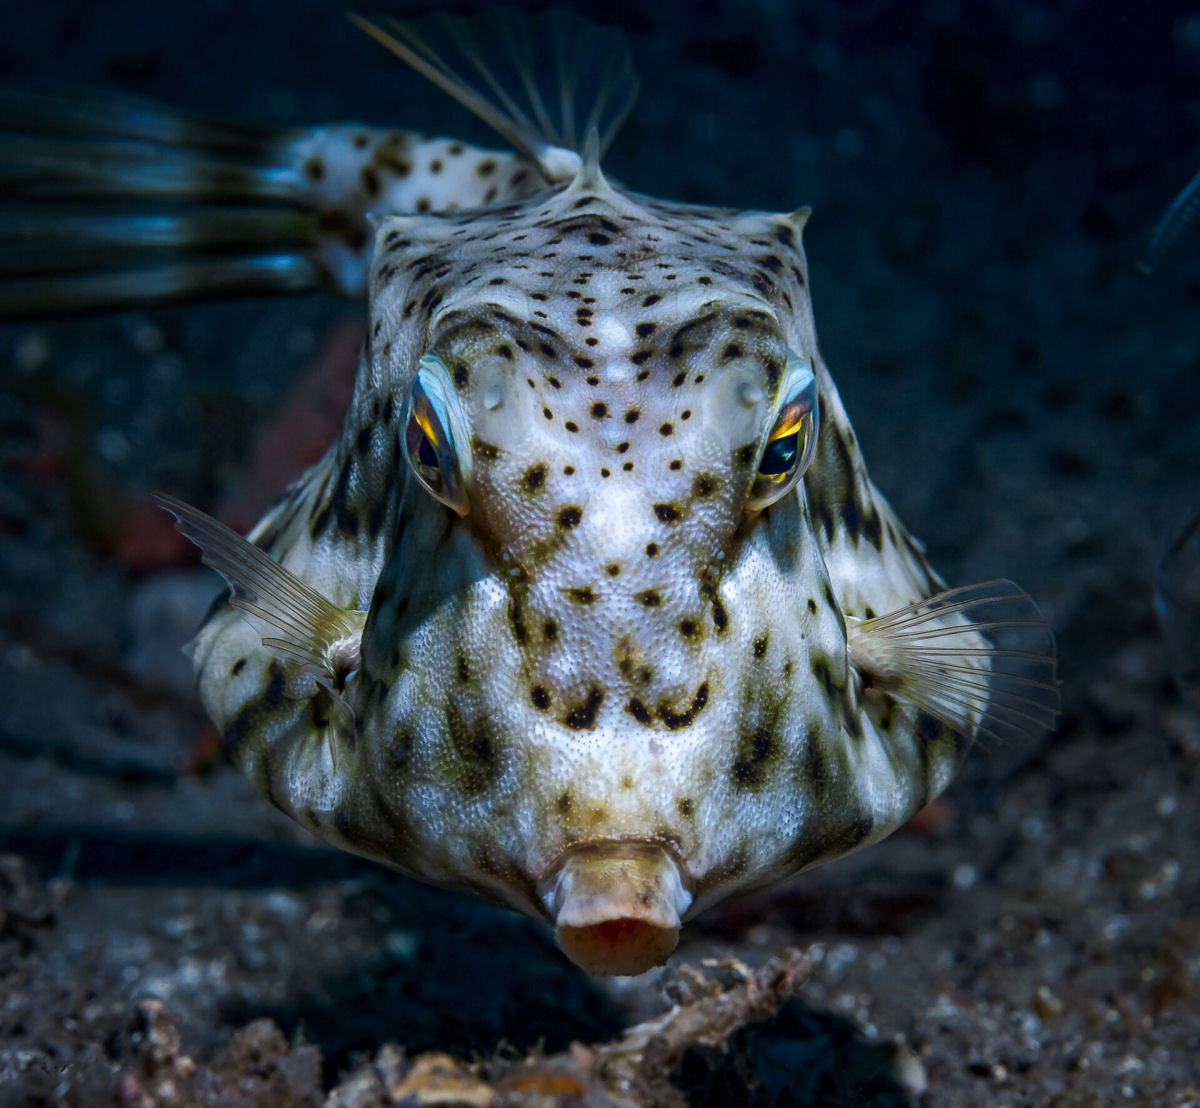 Fotógrafo registra espécies marinhas em vibrantes retratos subaquáticos 01